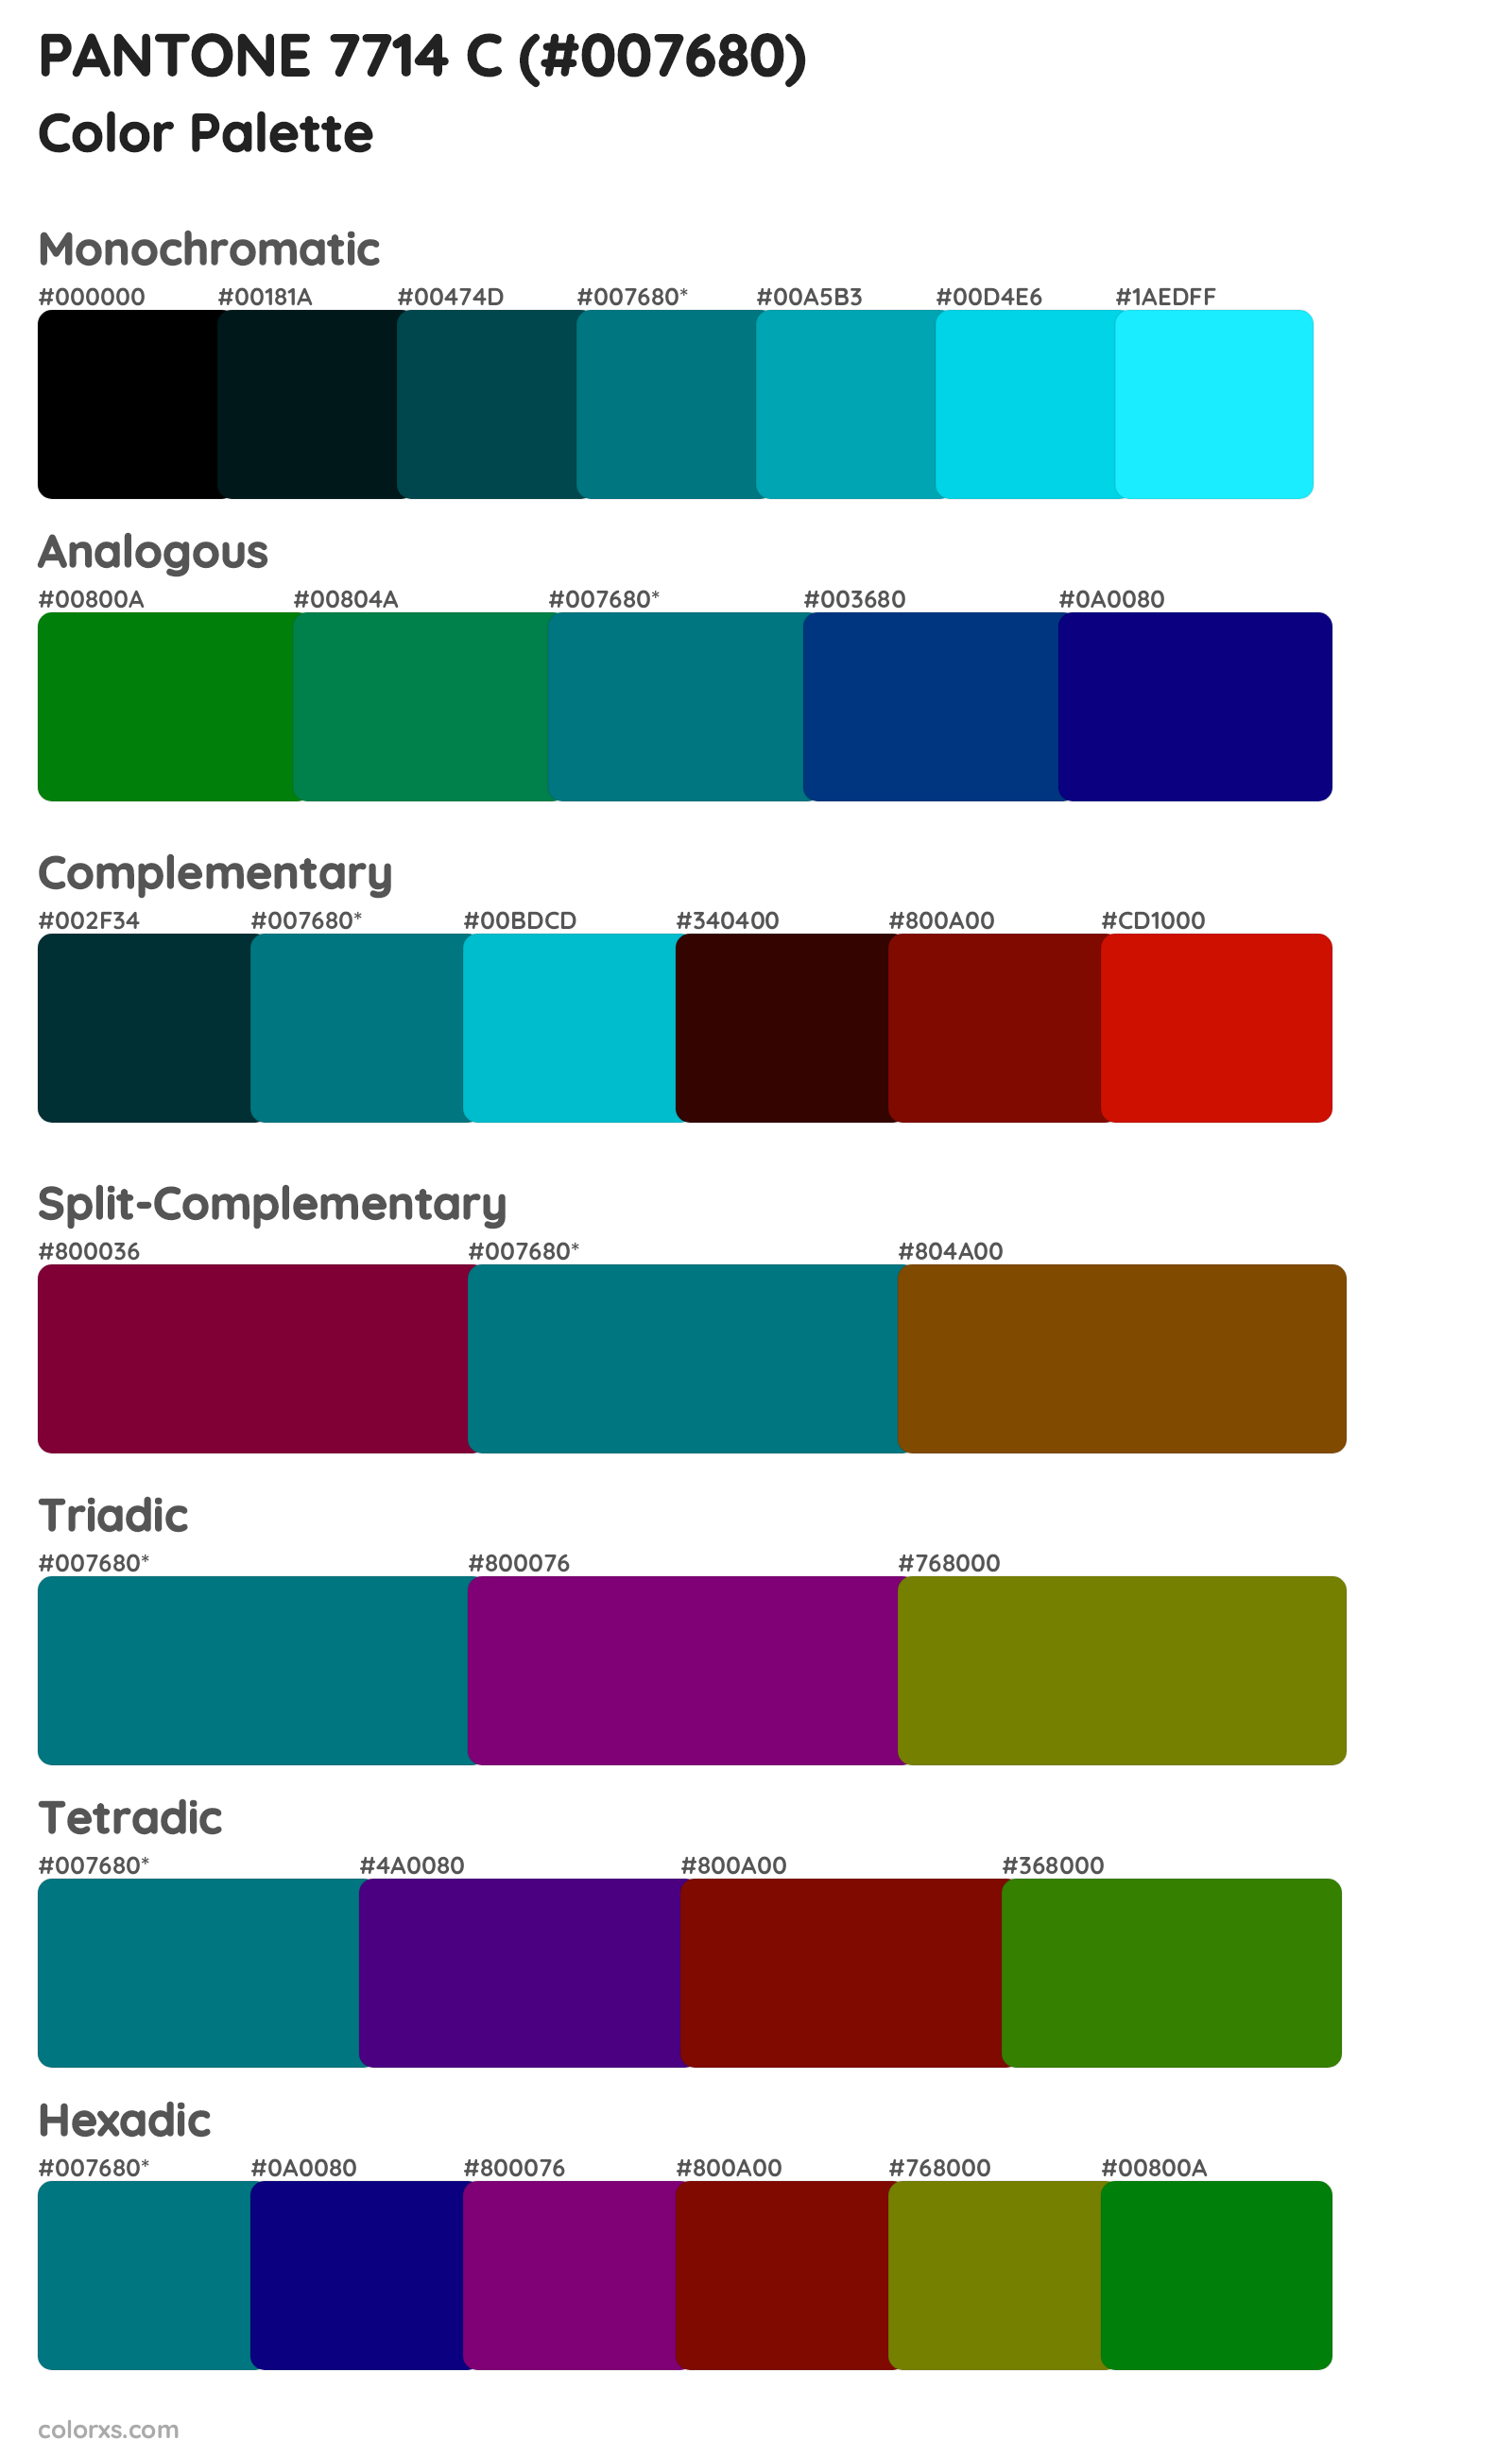 PANTONE 7714 C Color Scheme Palettes